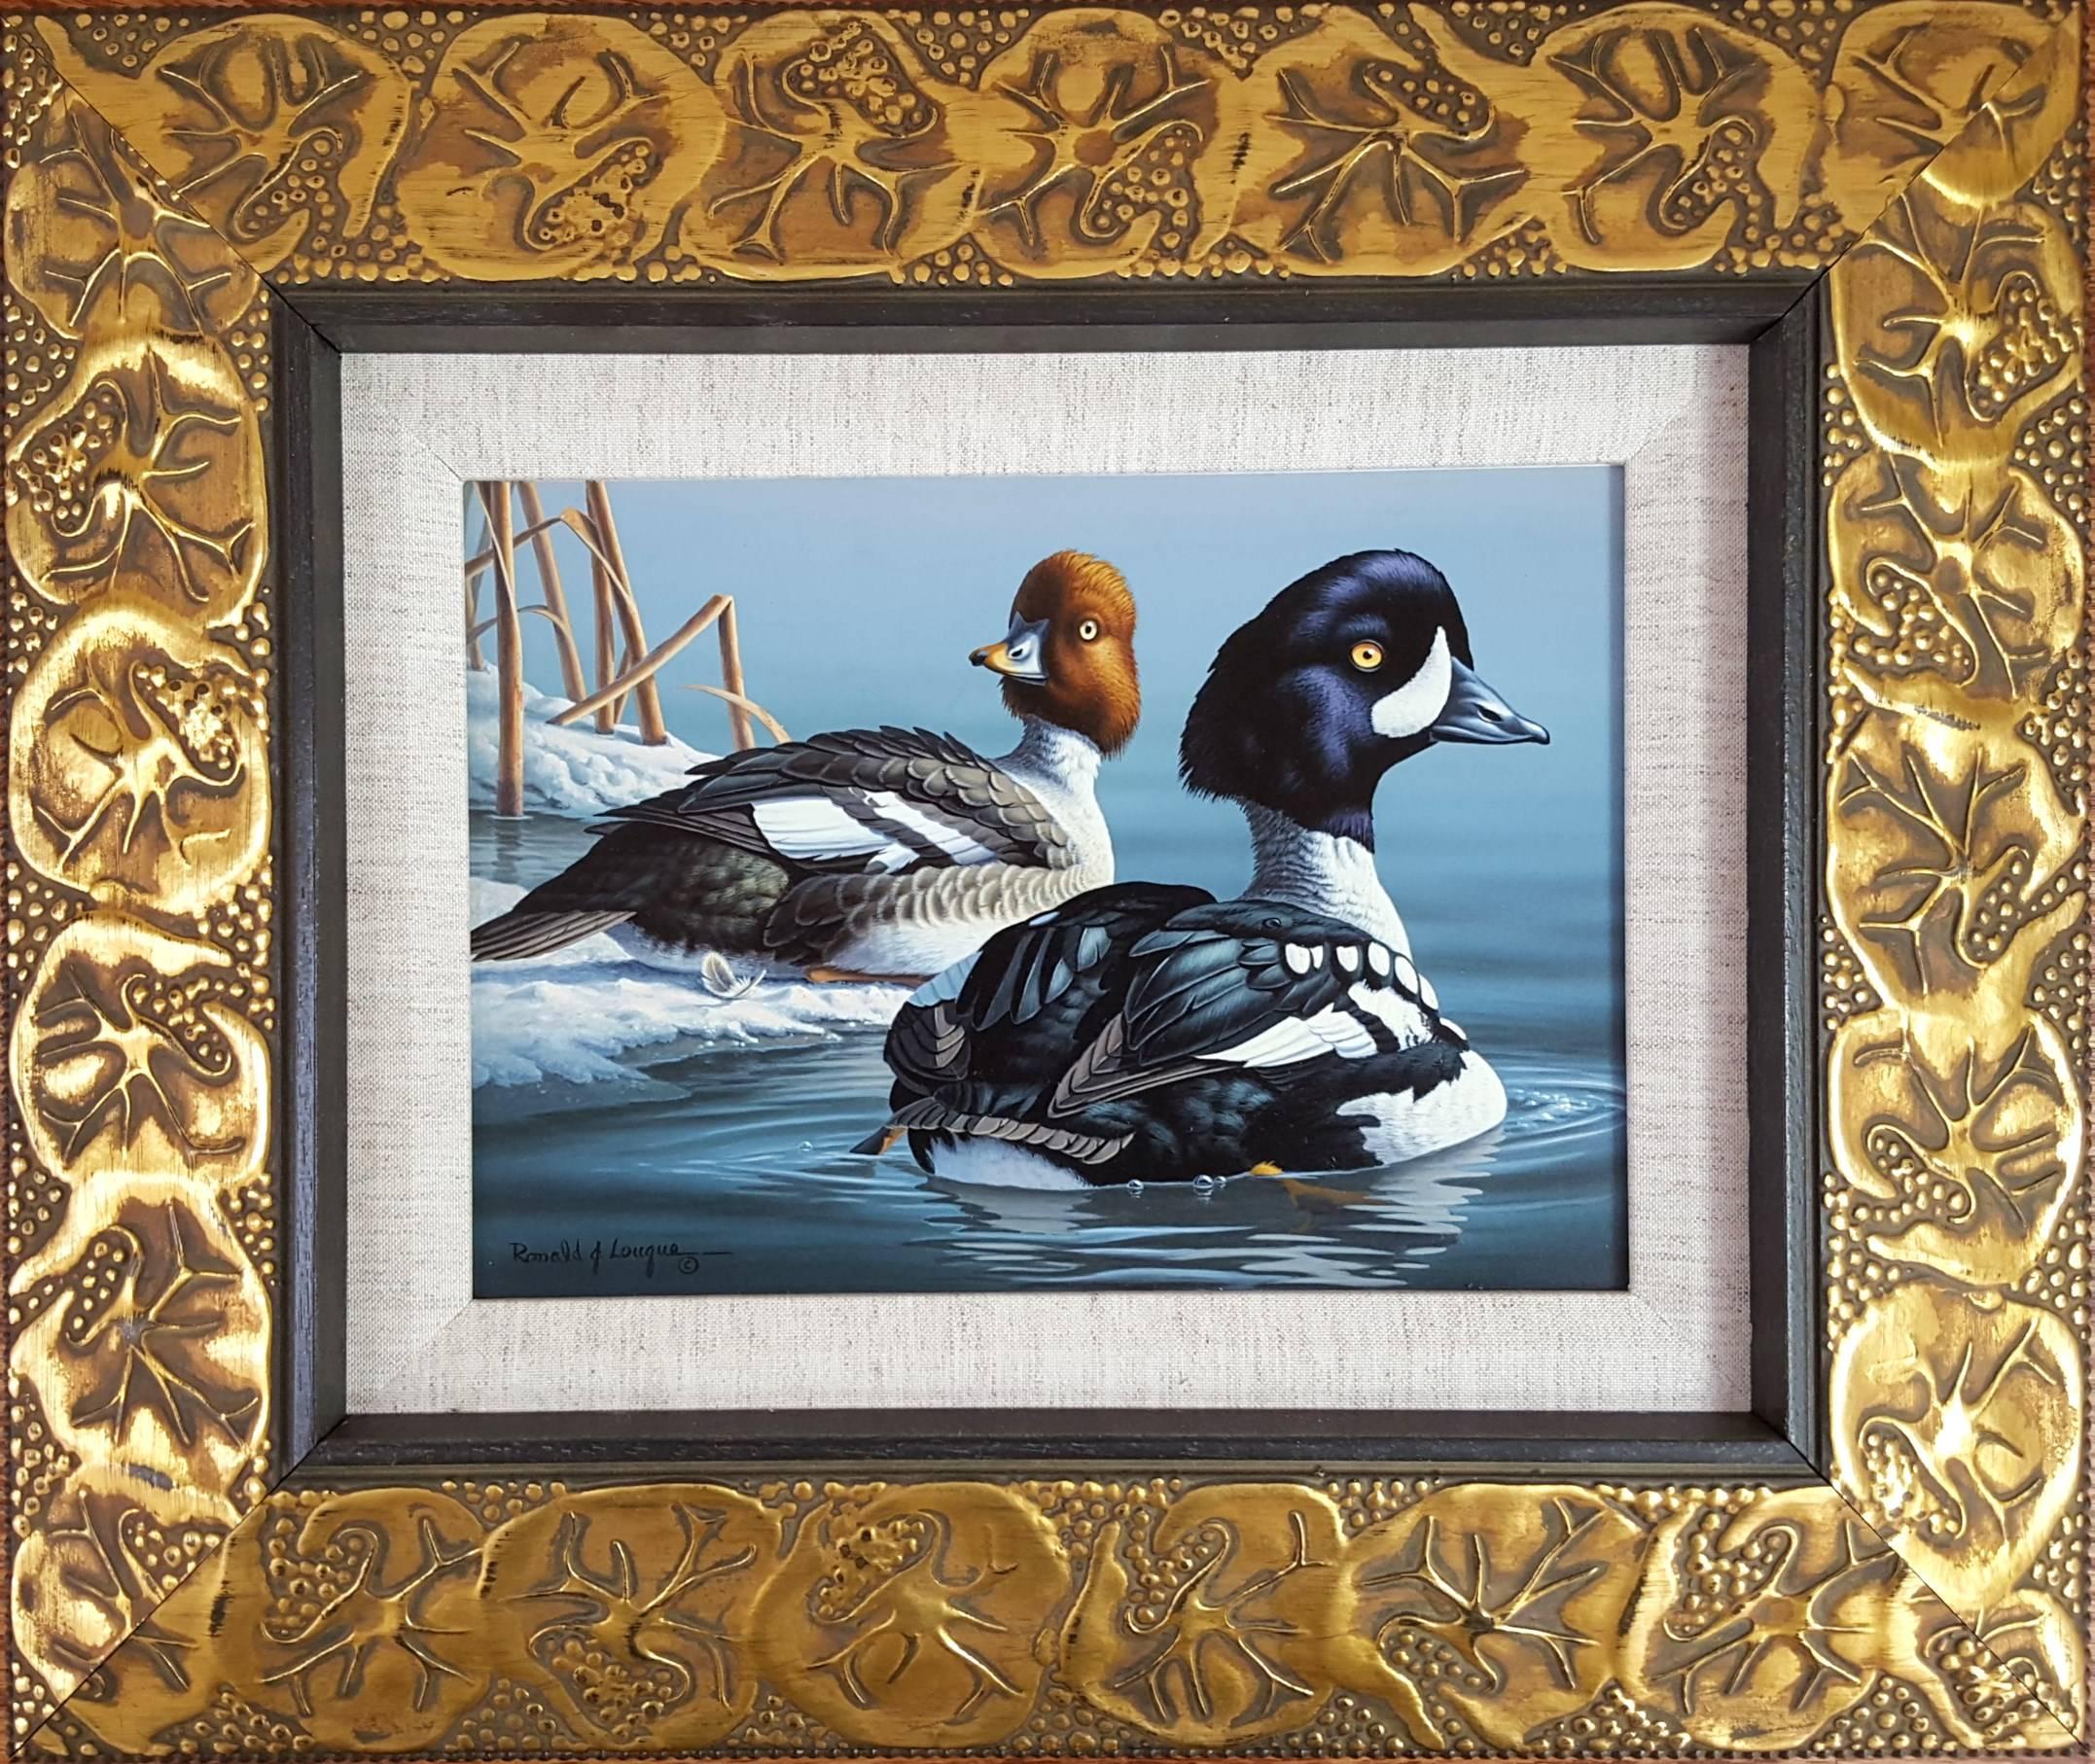 Garrot d'Islande /// Canard Contemporain Oiseau Faune Ornithologie Peinture Art - Painting de Ron Louque